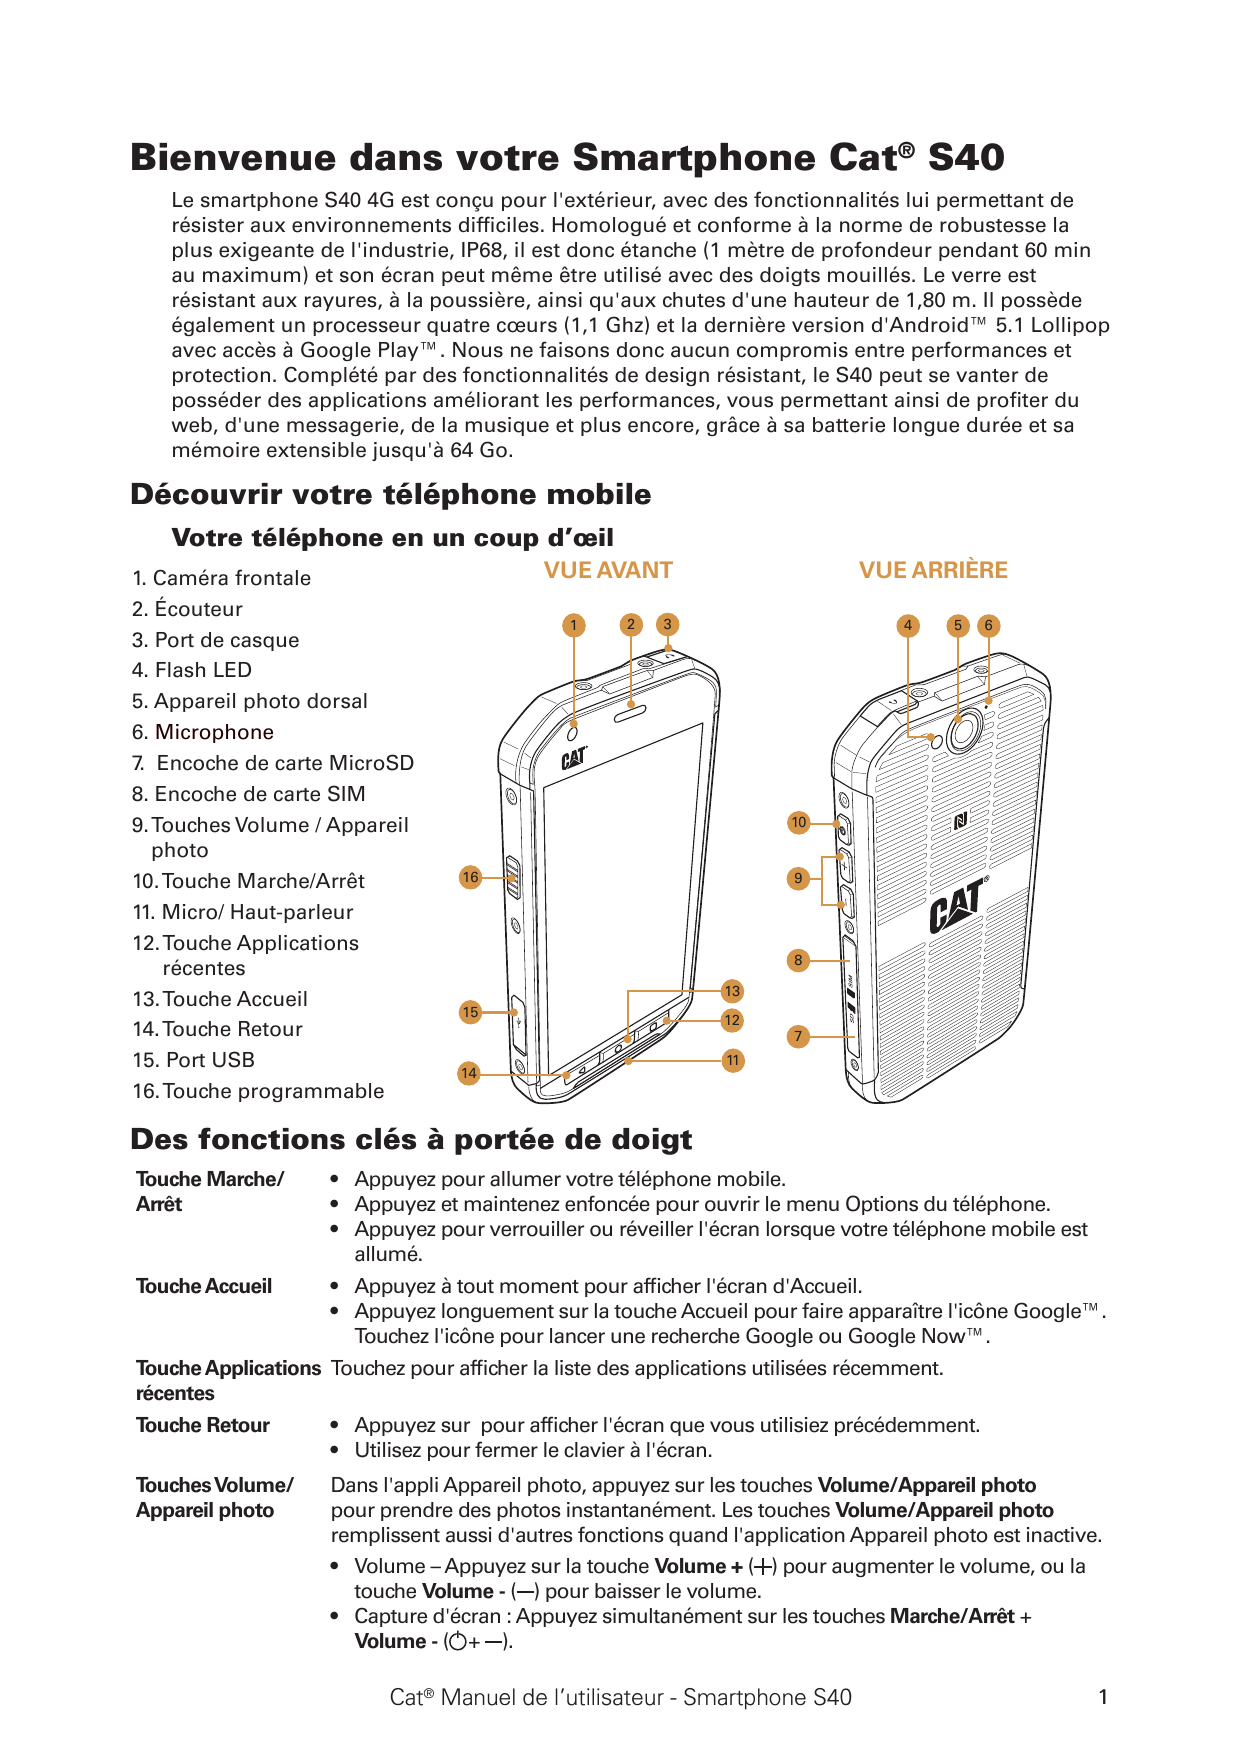 Bienvenue dans votre Smartphone Cat® S40Le smartphone S40 4G est conçu pour l'extérieur, avec des fonctionnalités lui permettant